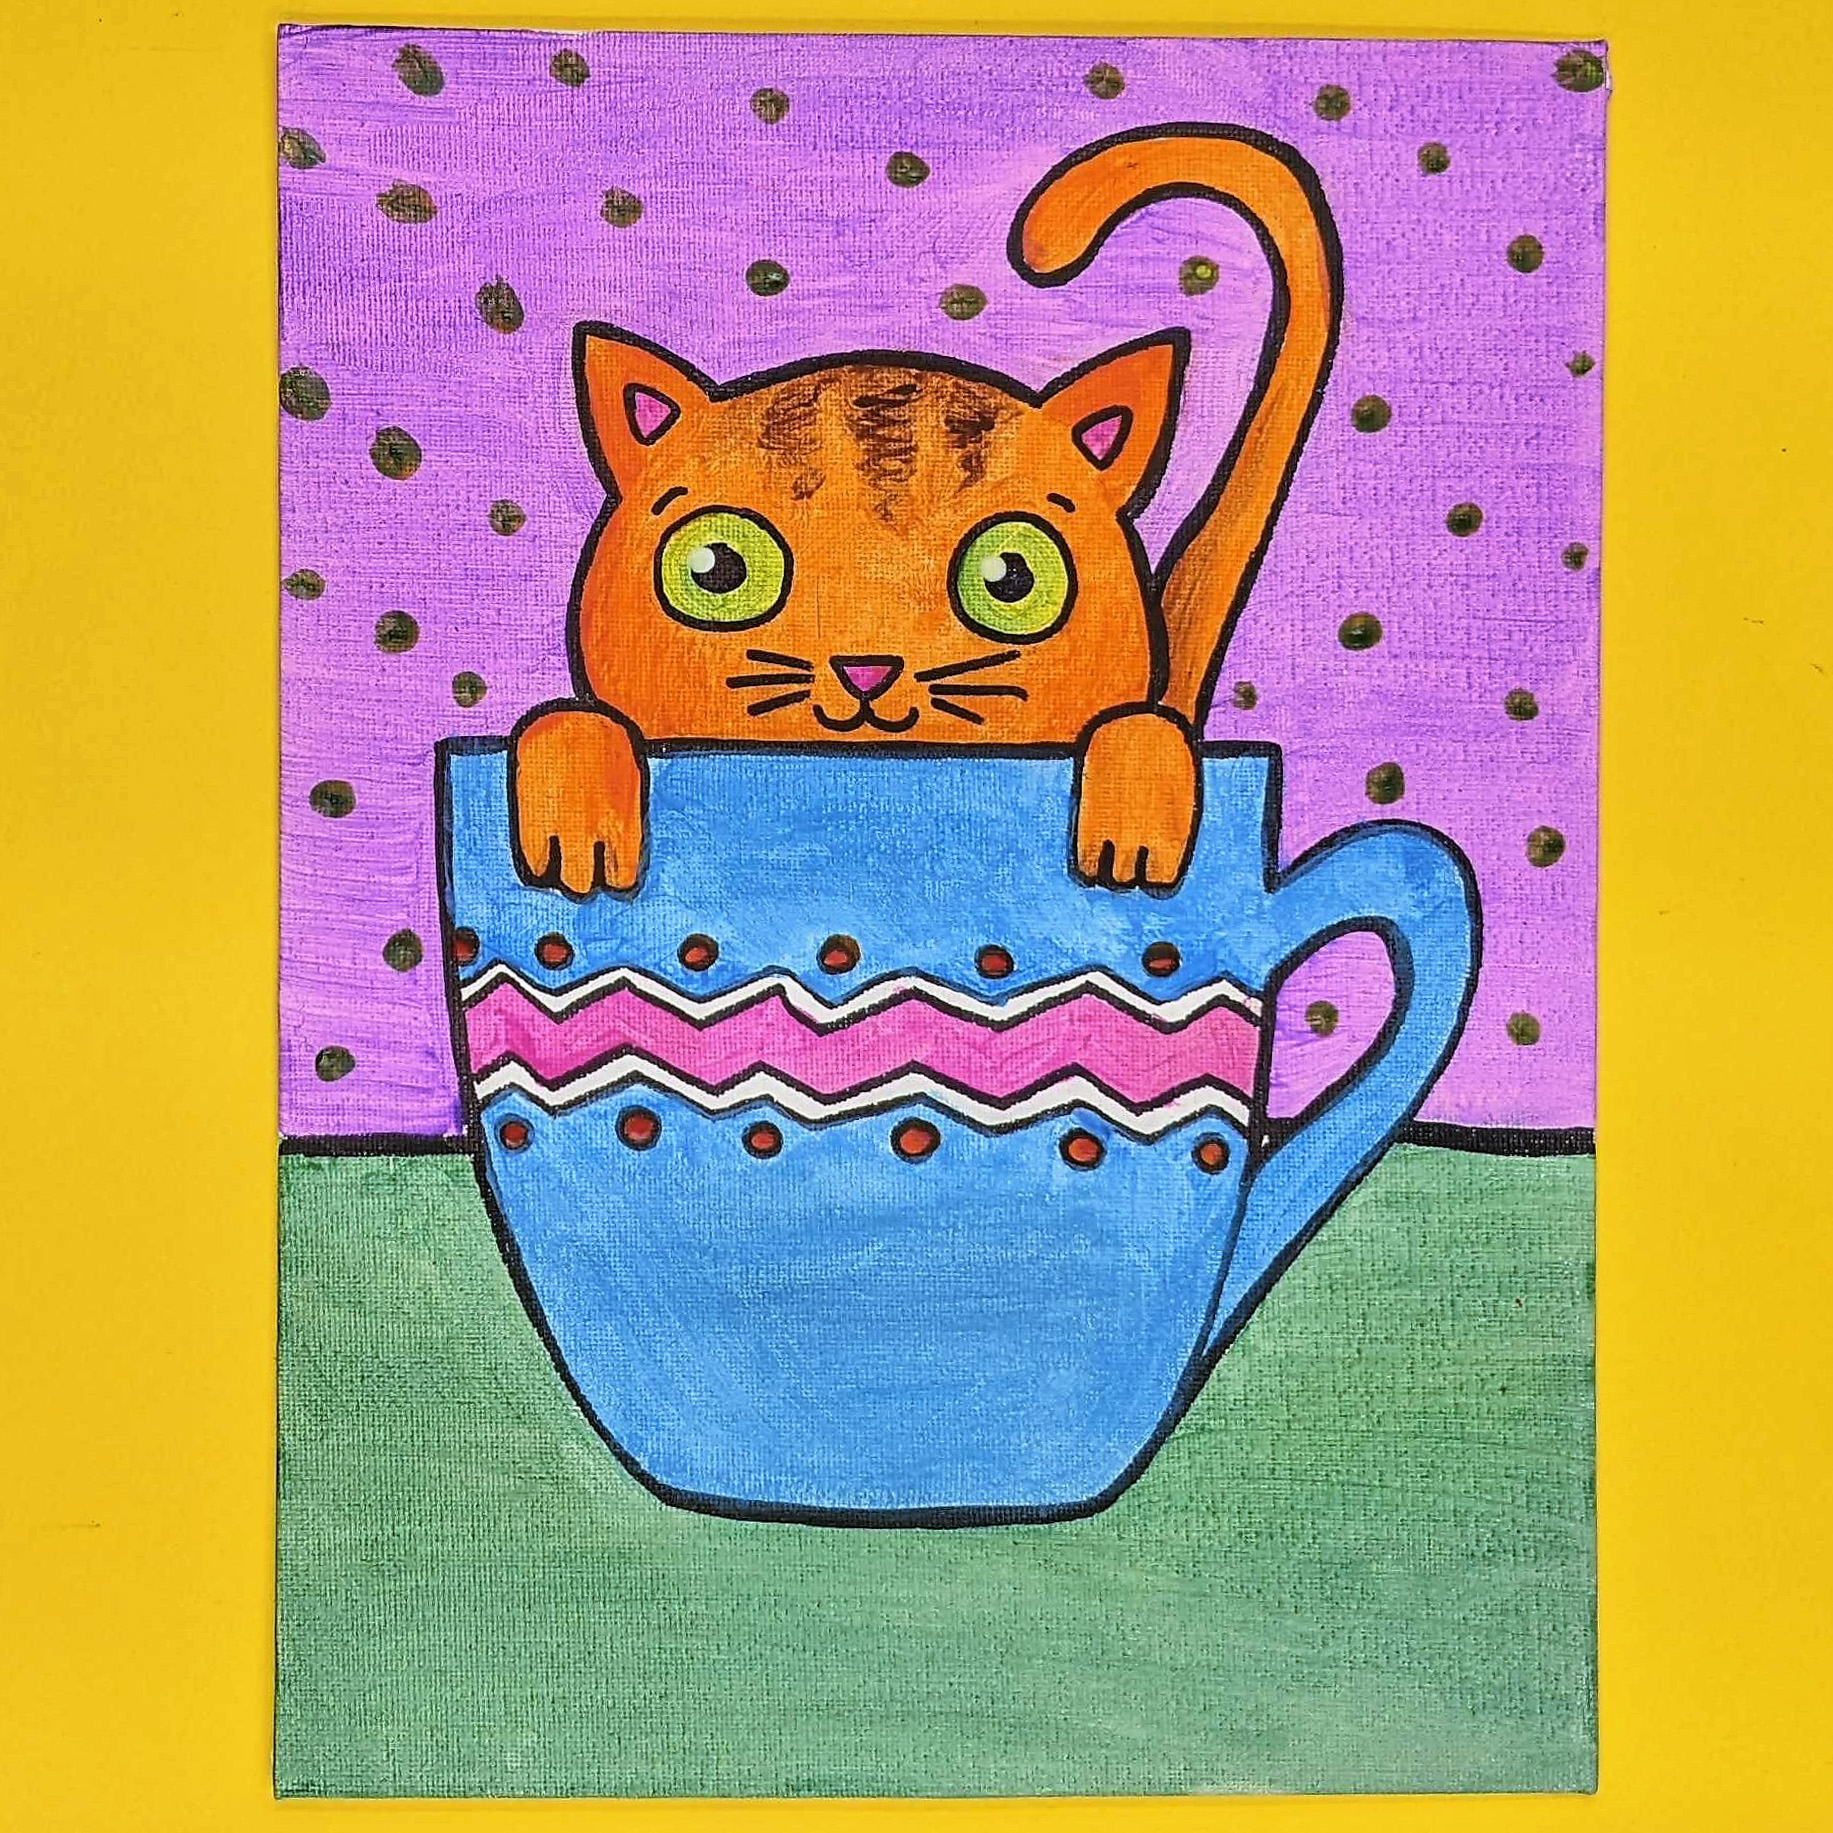 Kidcreate Studio - Brownsville, Teacup Kitten Art Project